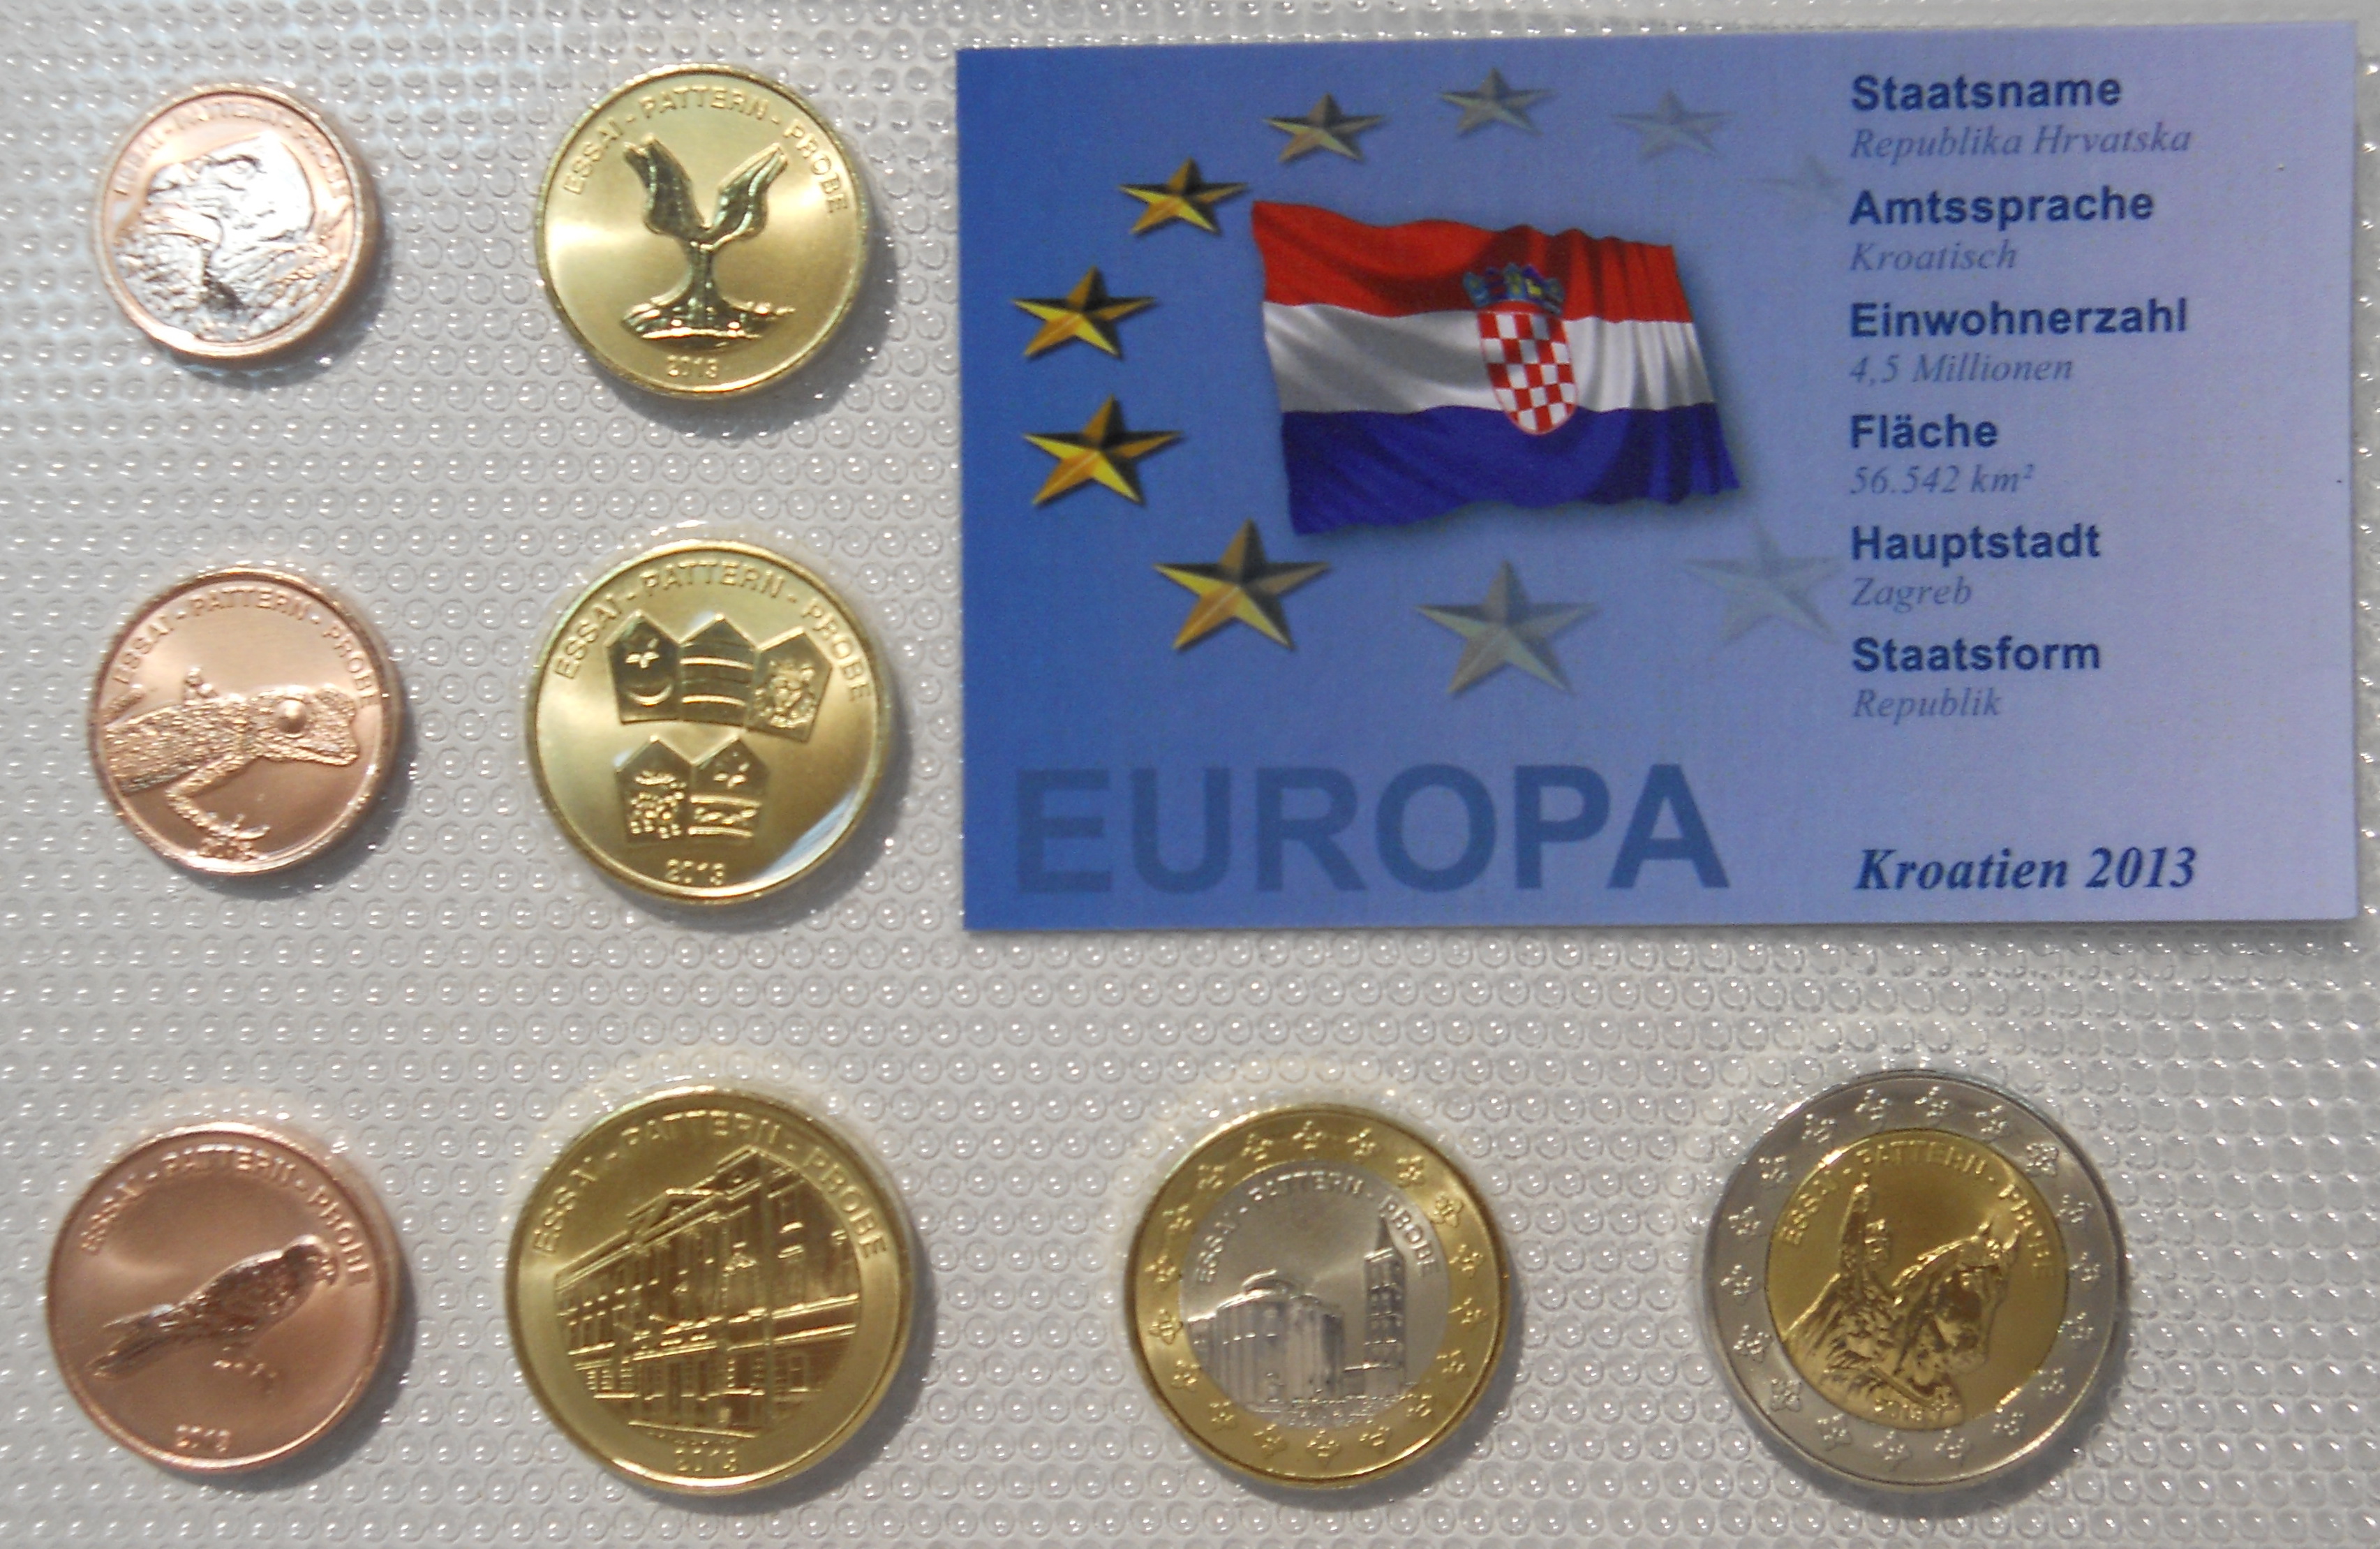 Узорак сериjе хрватског Евра, кованог новца коjи jе посвећен уласку Хрватске у Европску Униjу 2013.